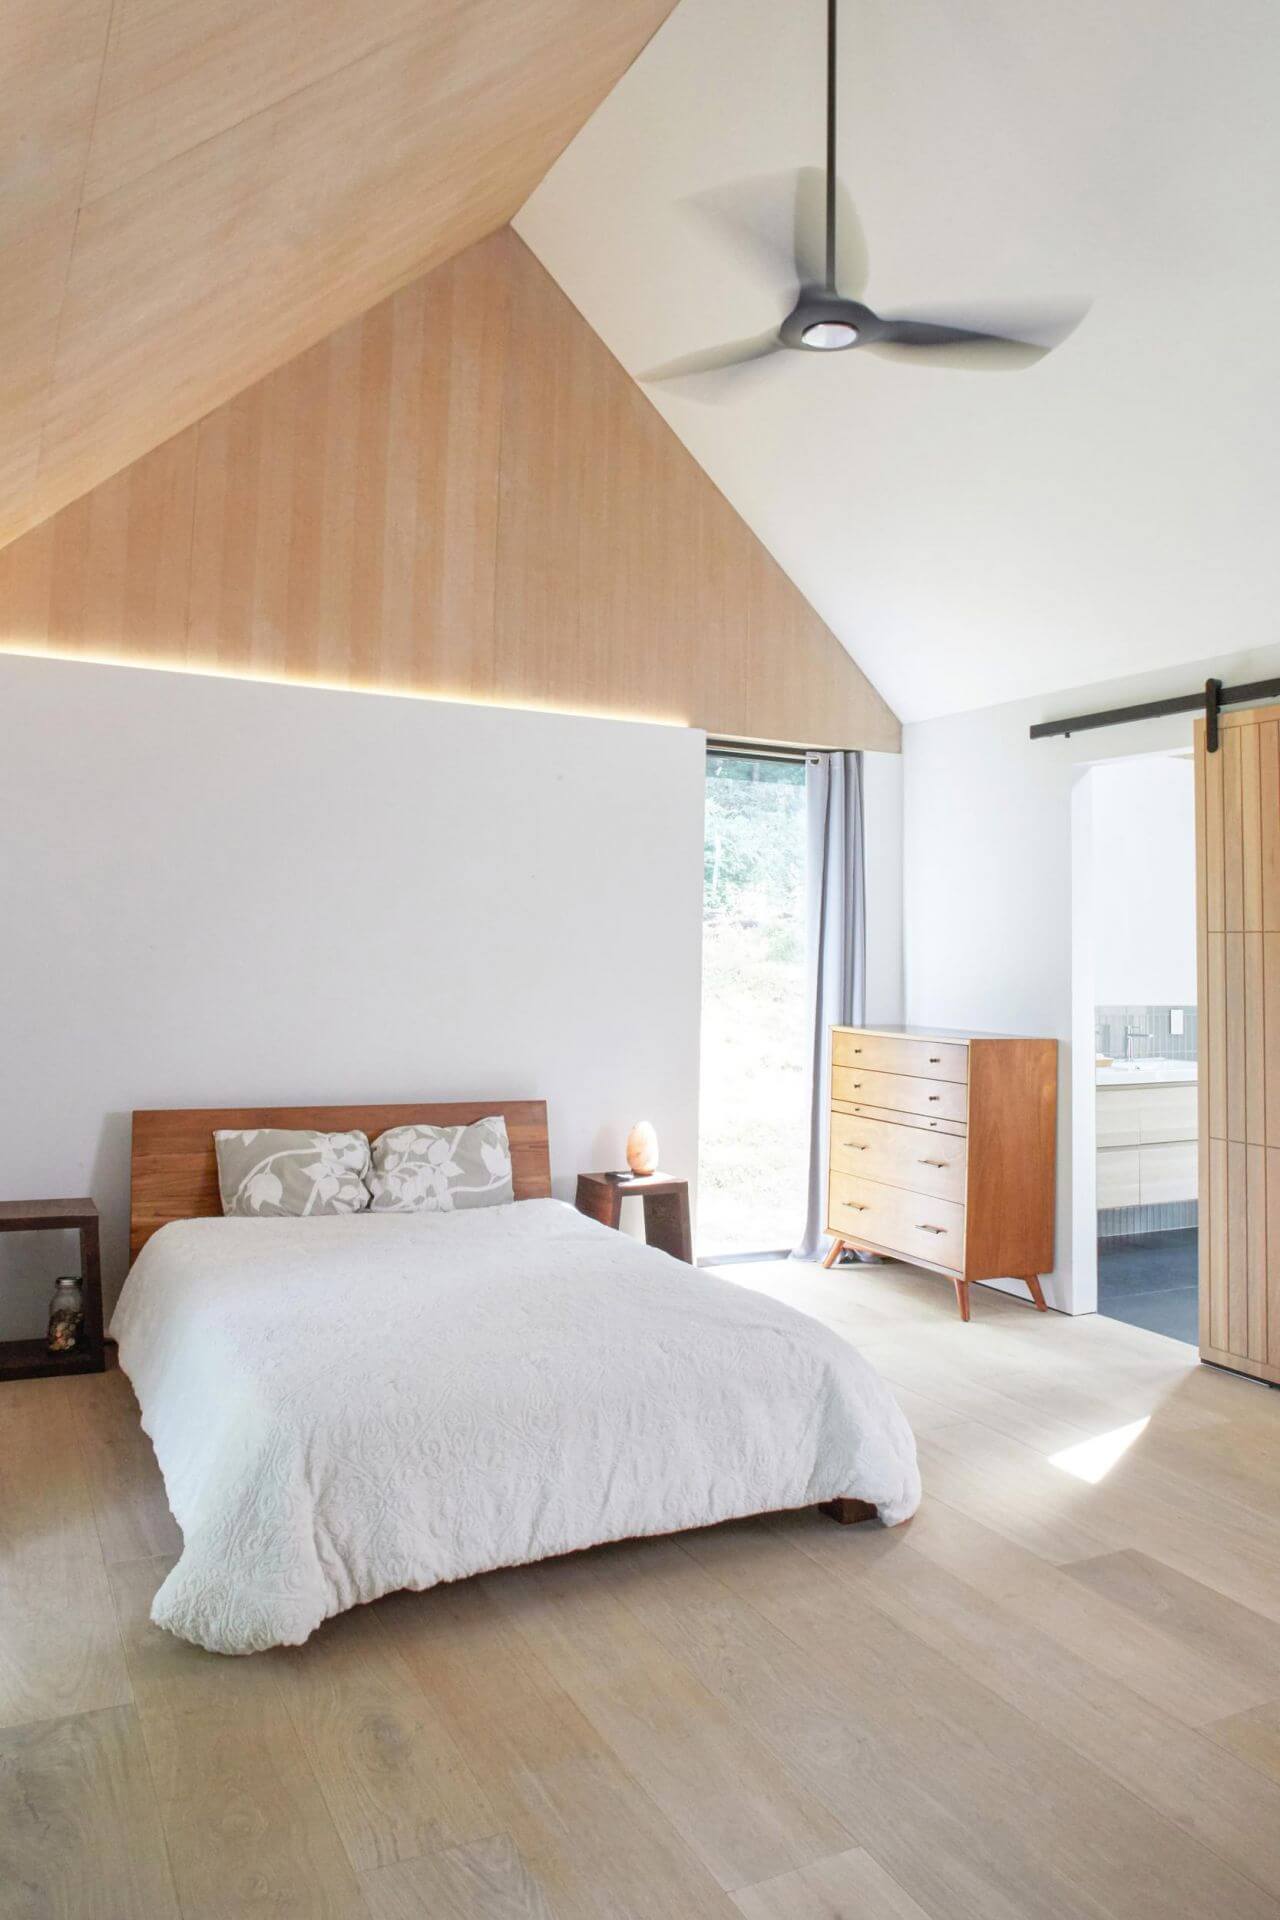 Oak-floorboards in a quietly designed bedroom